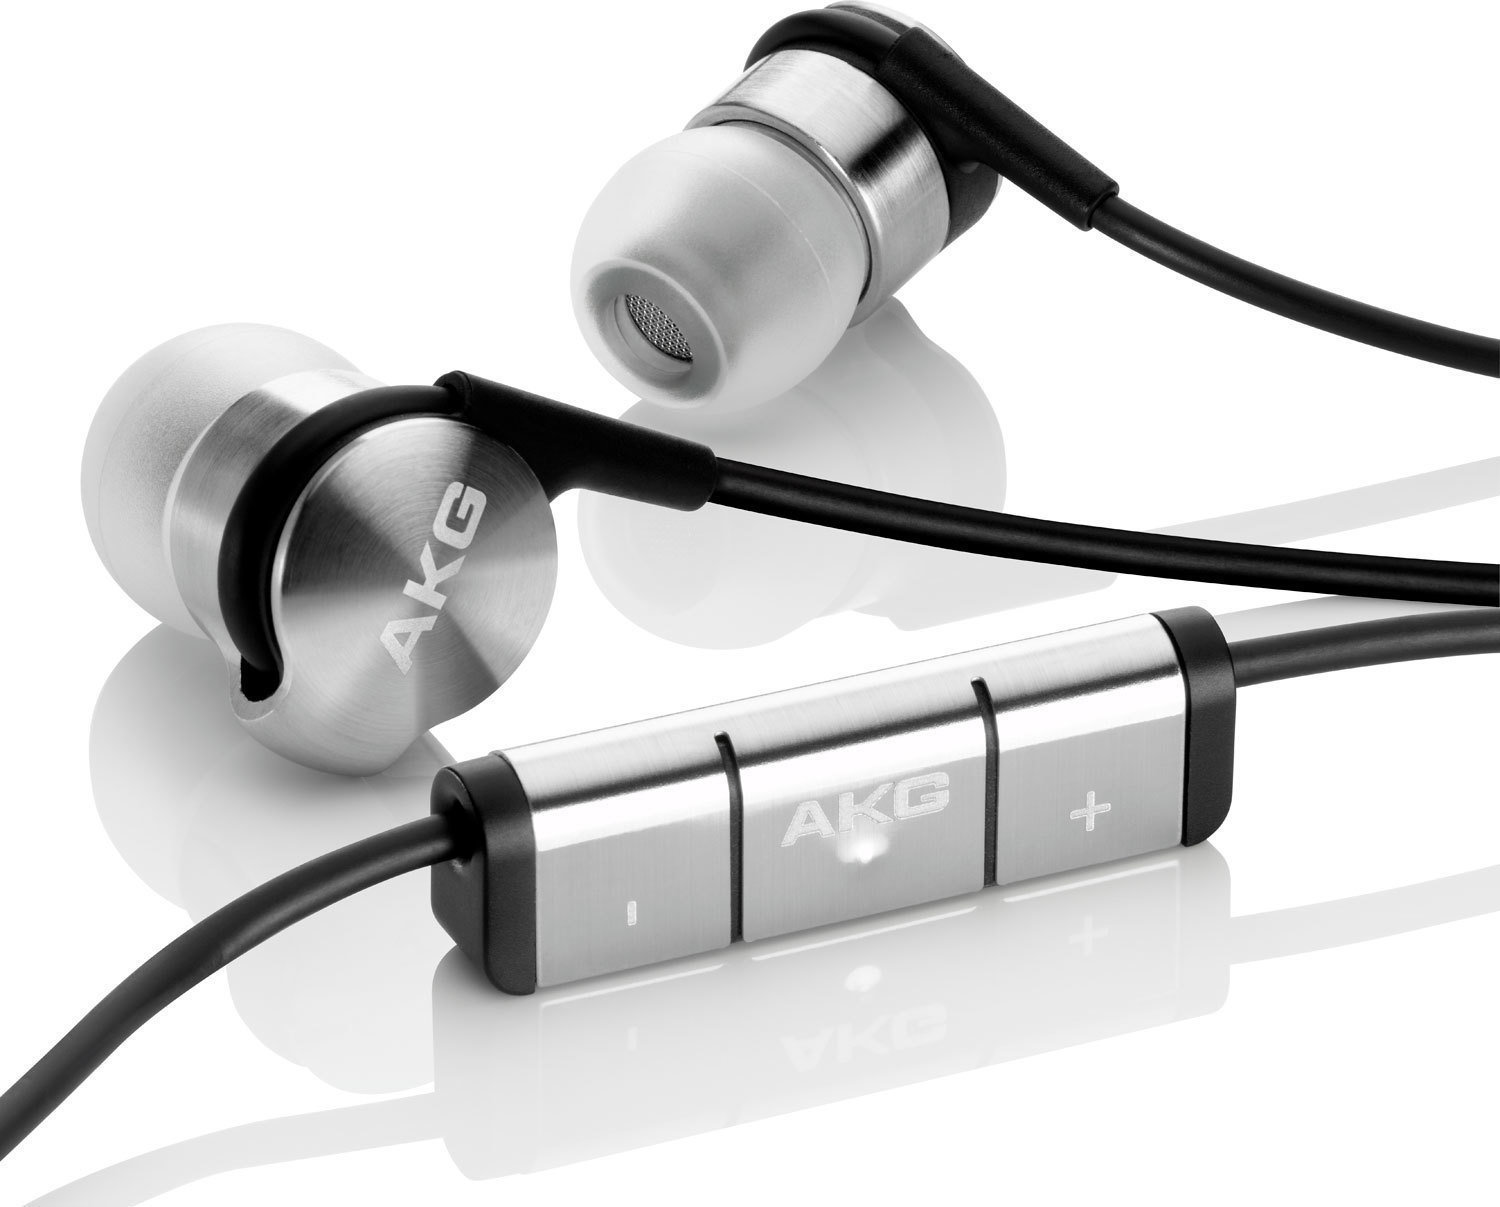 In-Ear Headphones AKG K3003 Black-Chrome